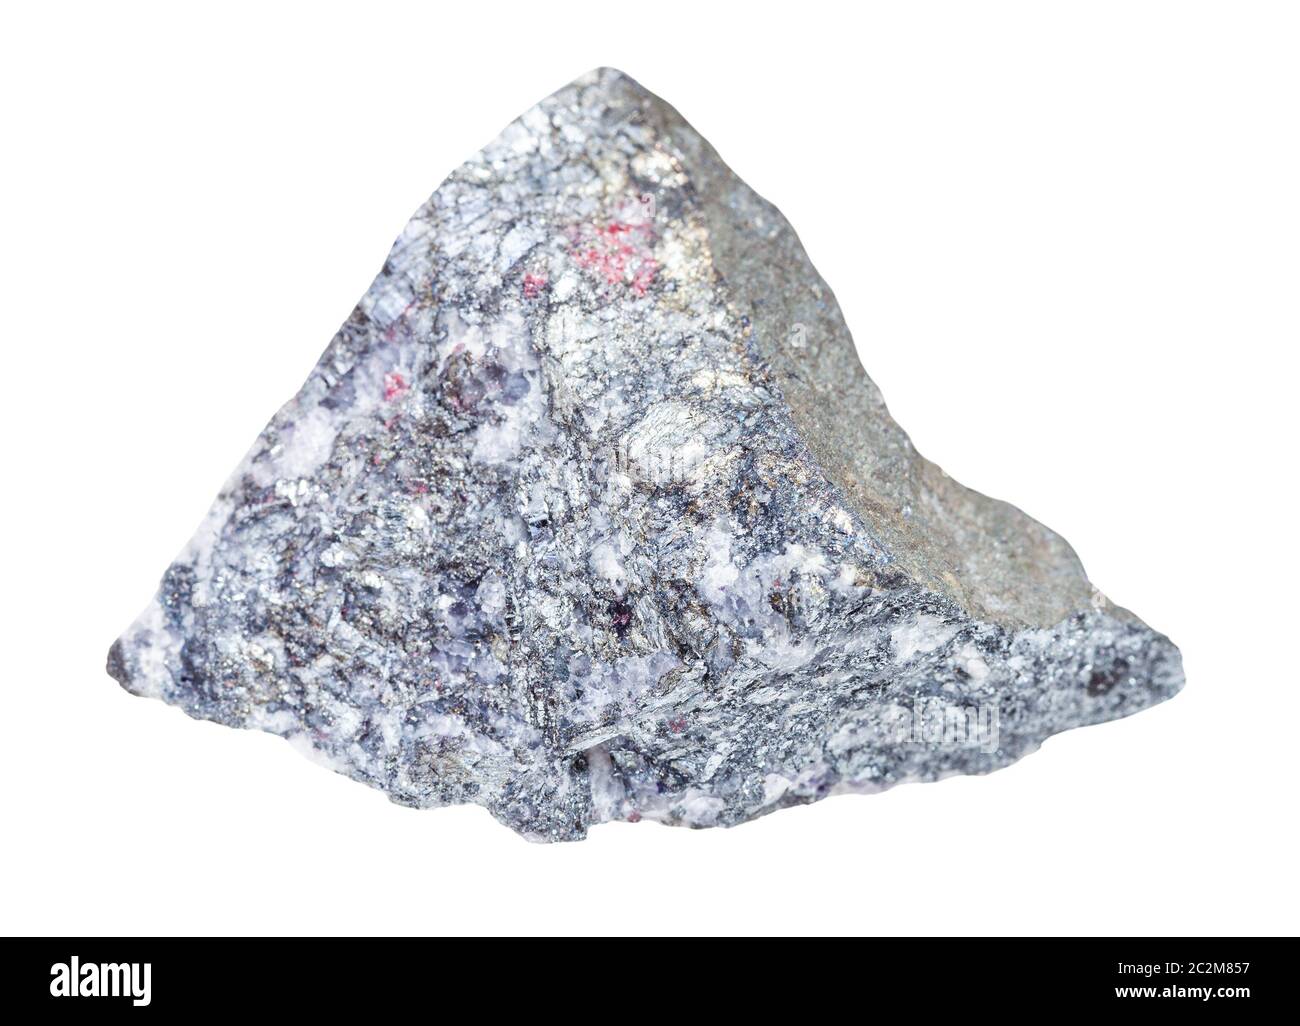 gros plan d'un échantillon de minéraux naturels provenant de la collection géologique - morceau de roche brute de stibnite (antimonite) isolé sur fond blanc Banque D'Images